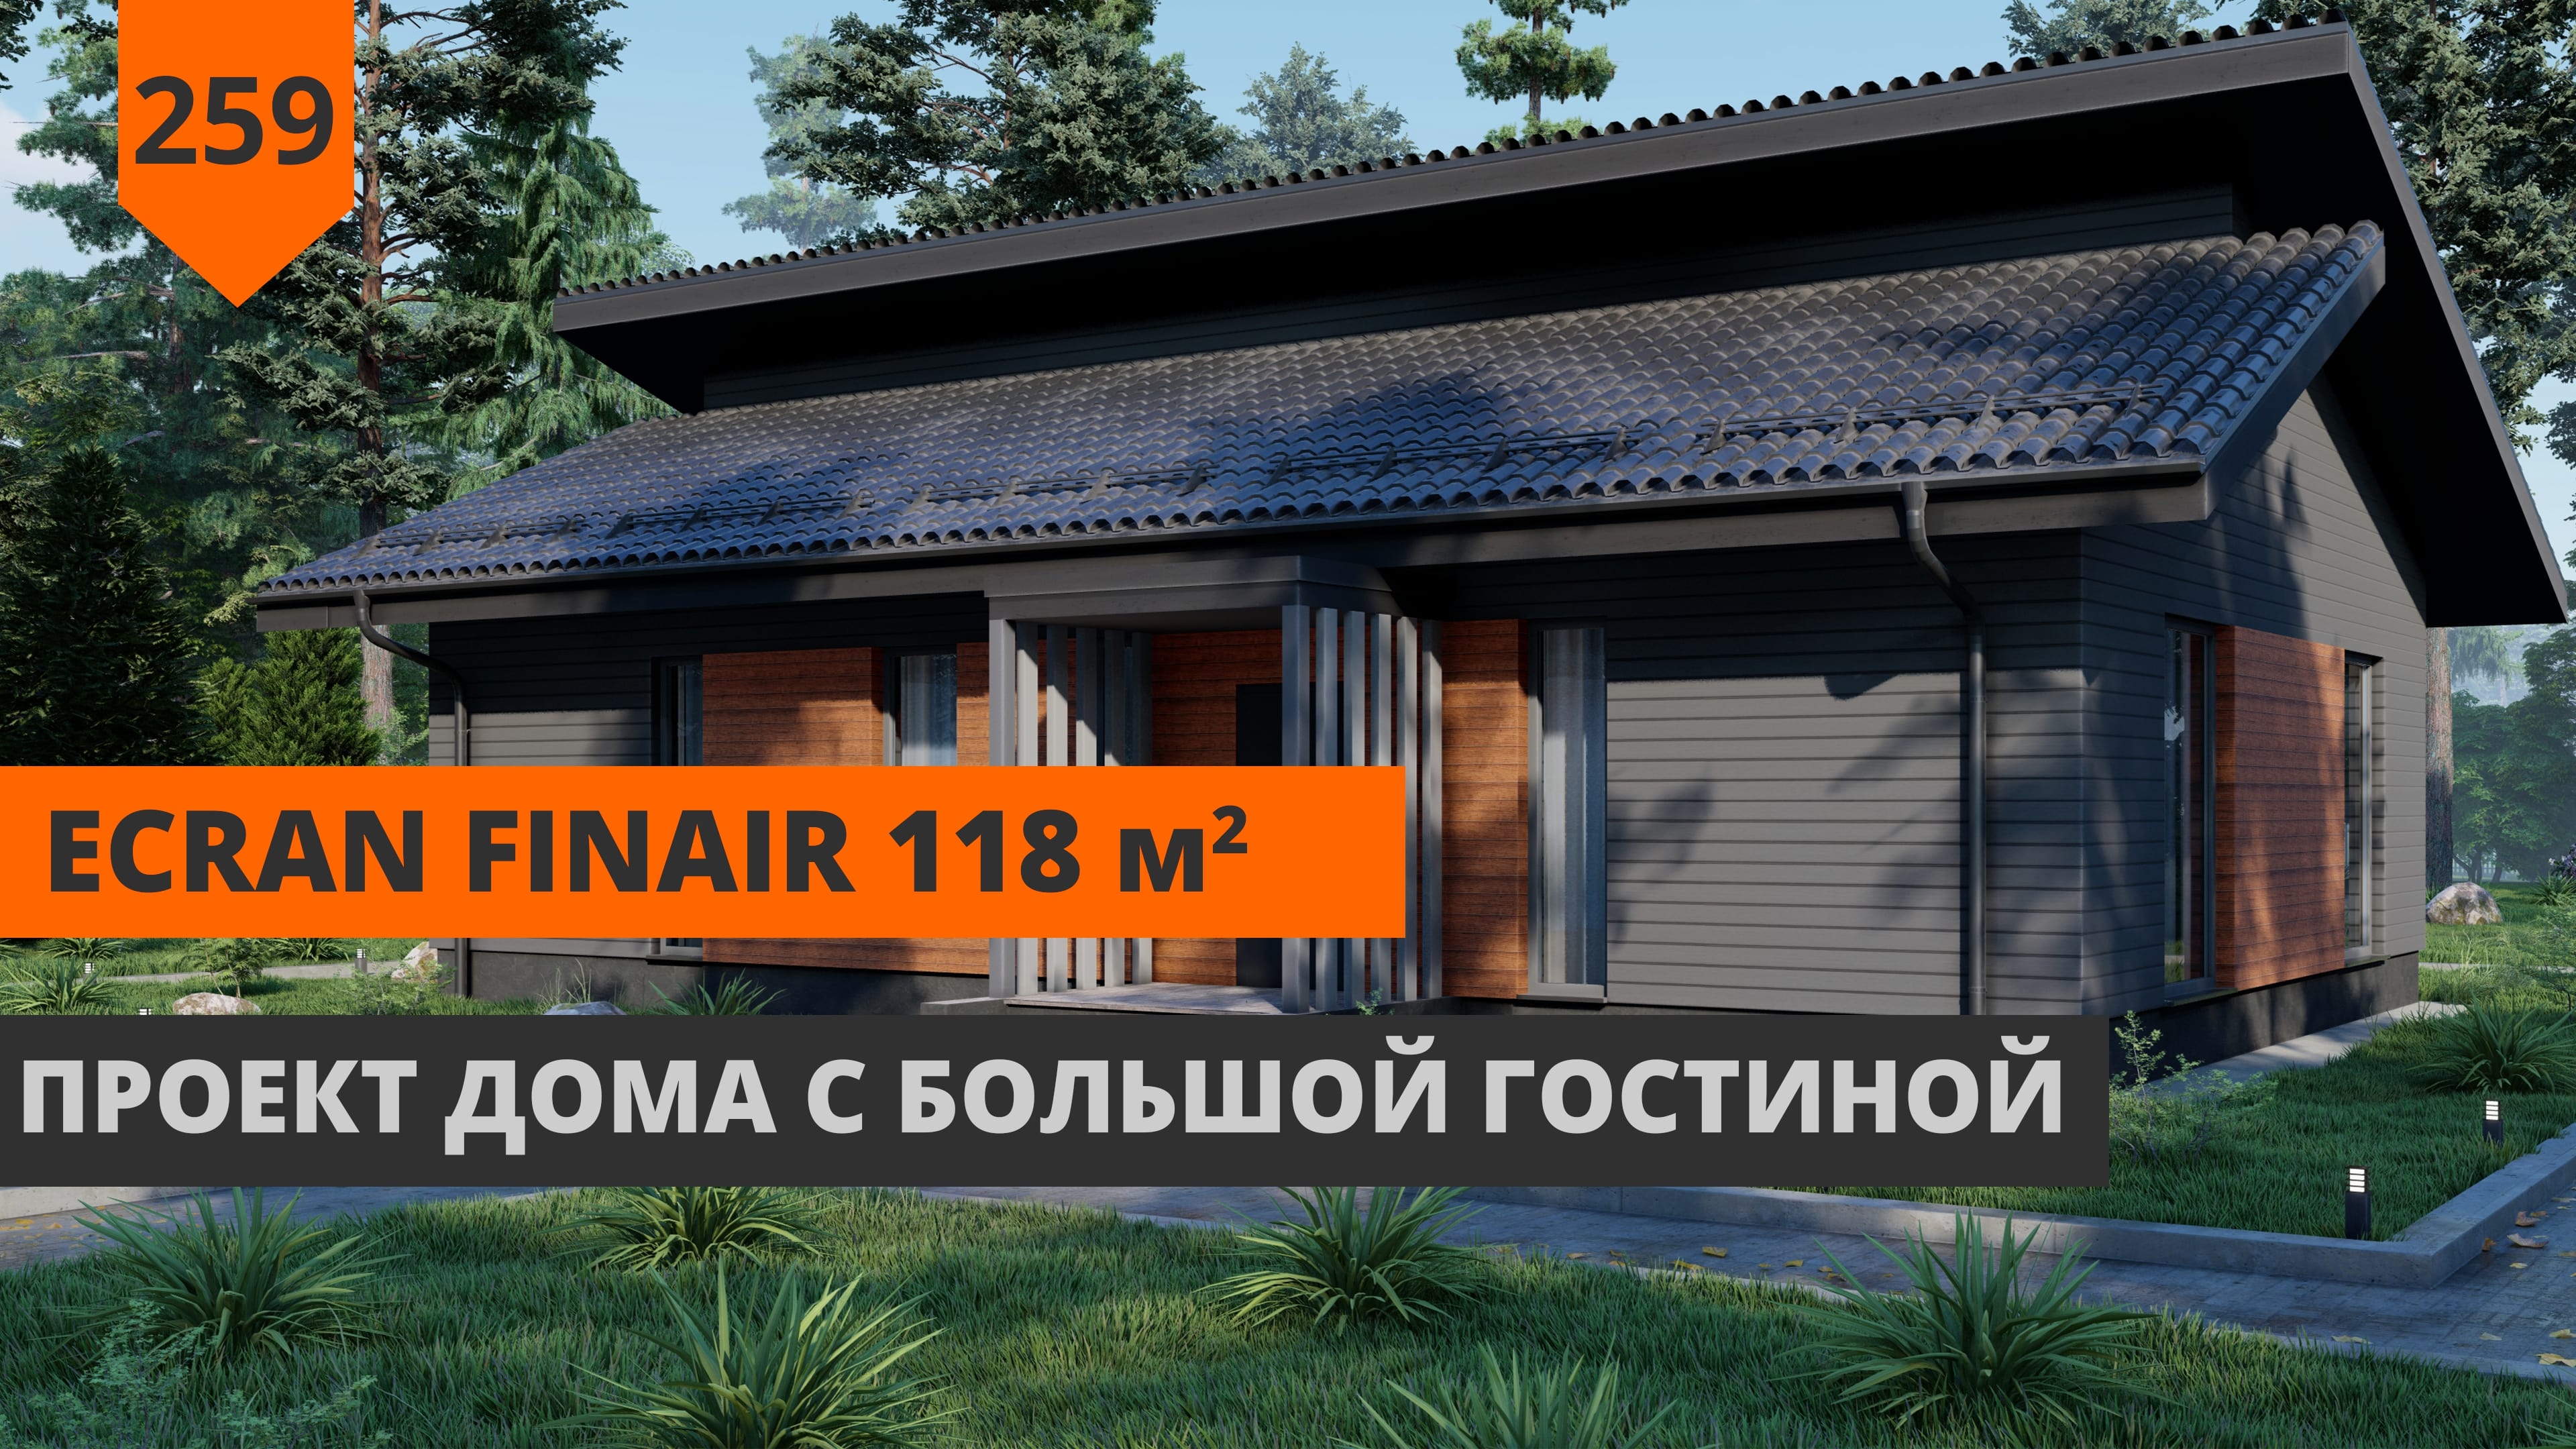 Одноэтажный дом с большой гостиной "EcranFinAir" 118 М²